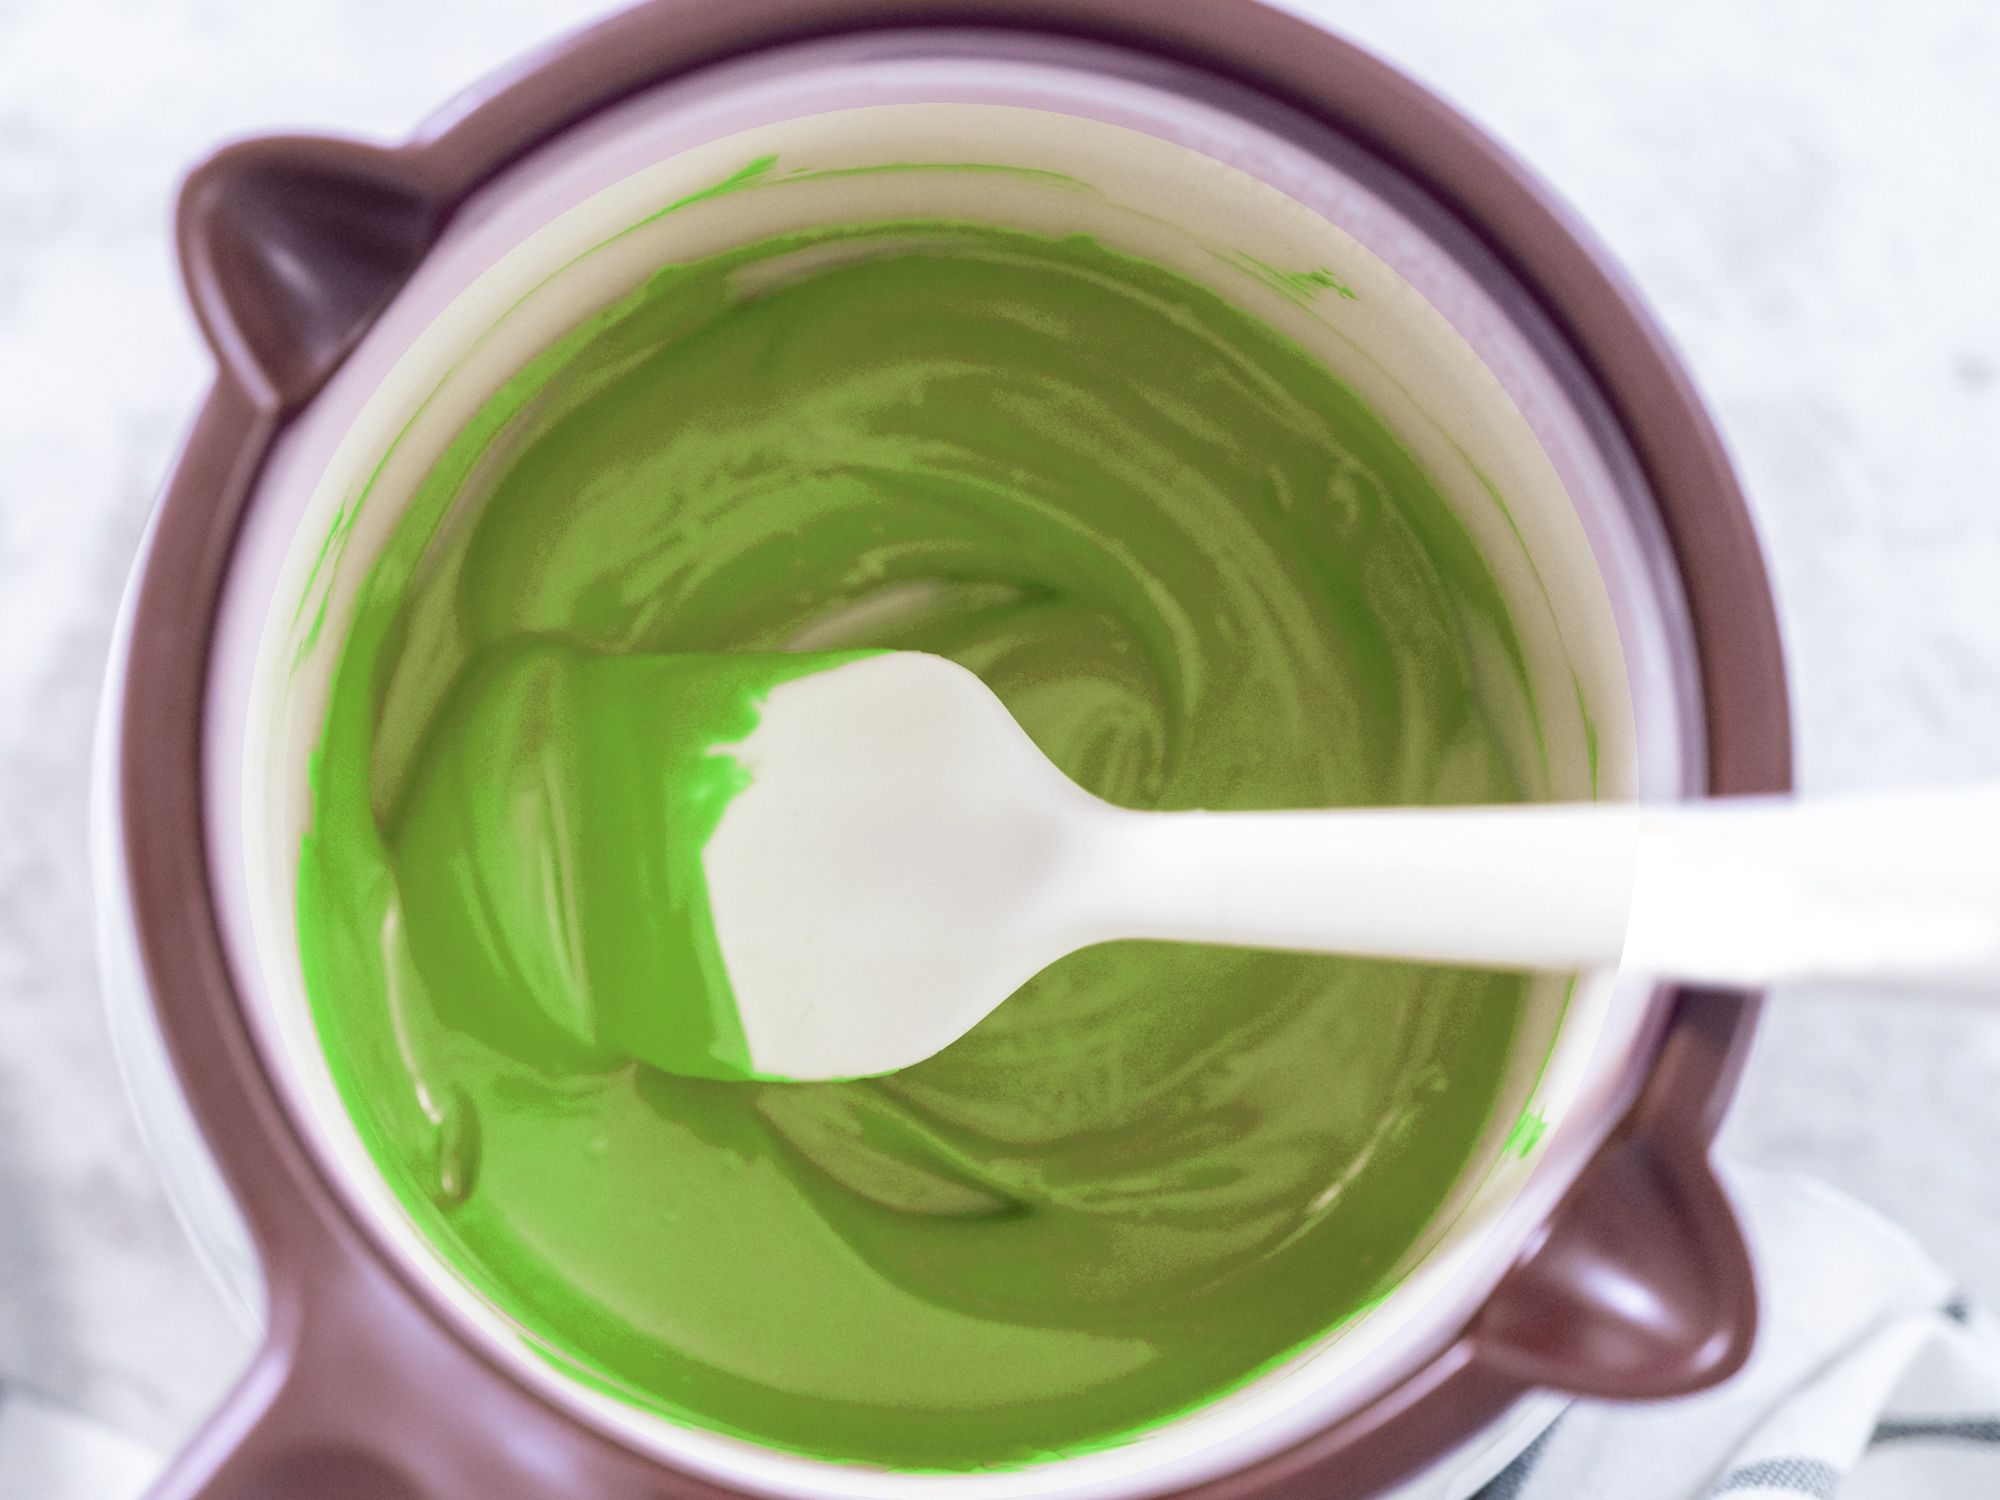 Bunte Candy Melts Glasur 250g Grün aromatisiert schmelzen